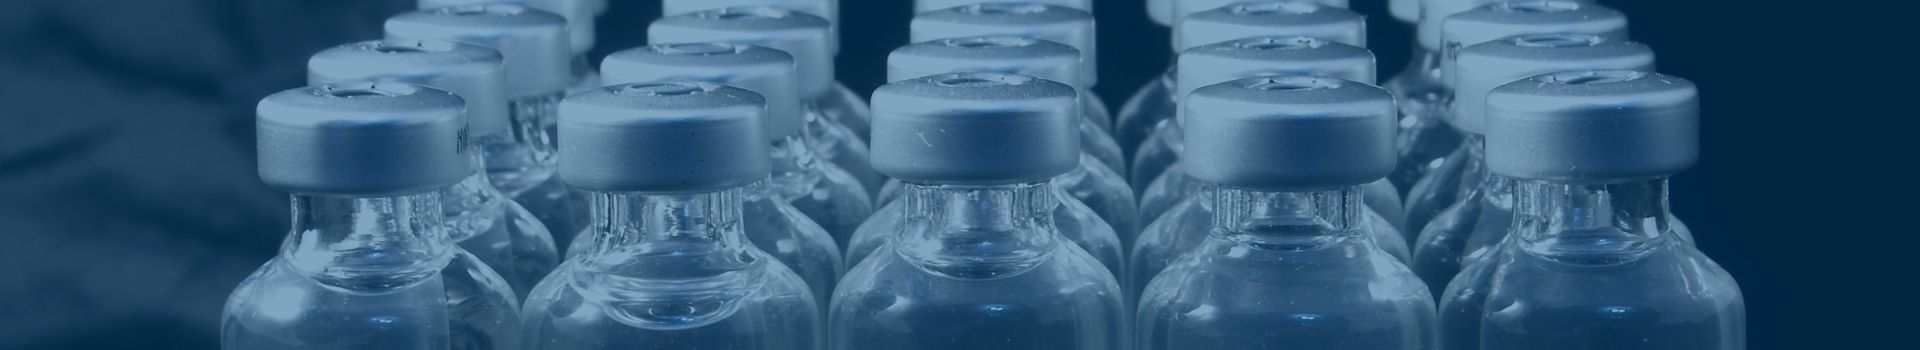 capped vials of liquid pharmaceuticals